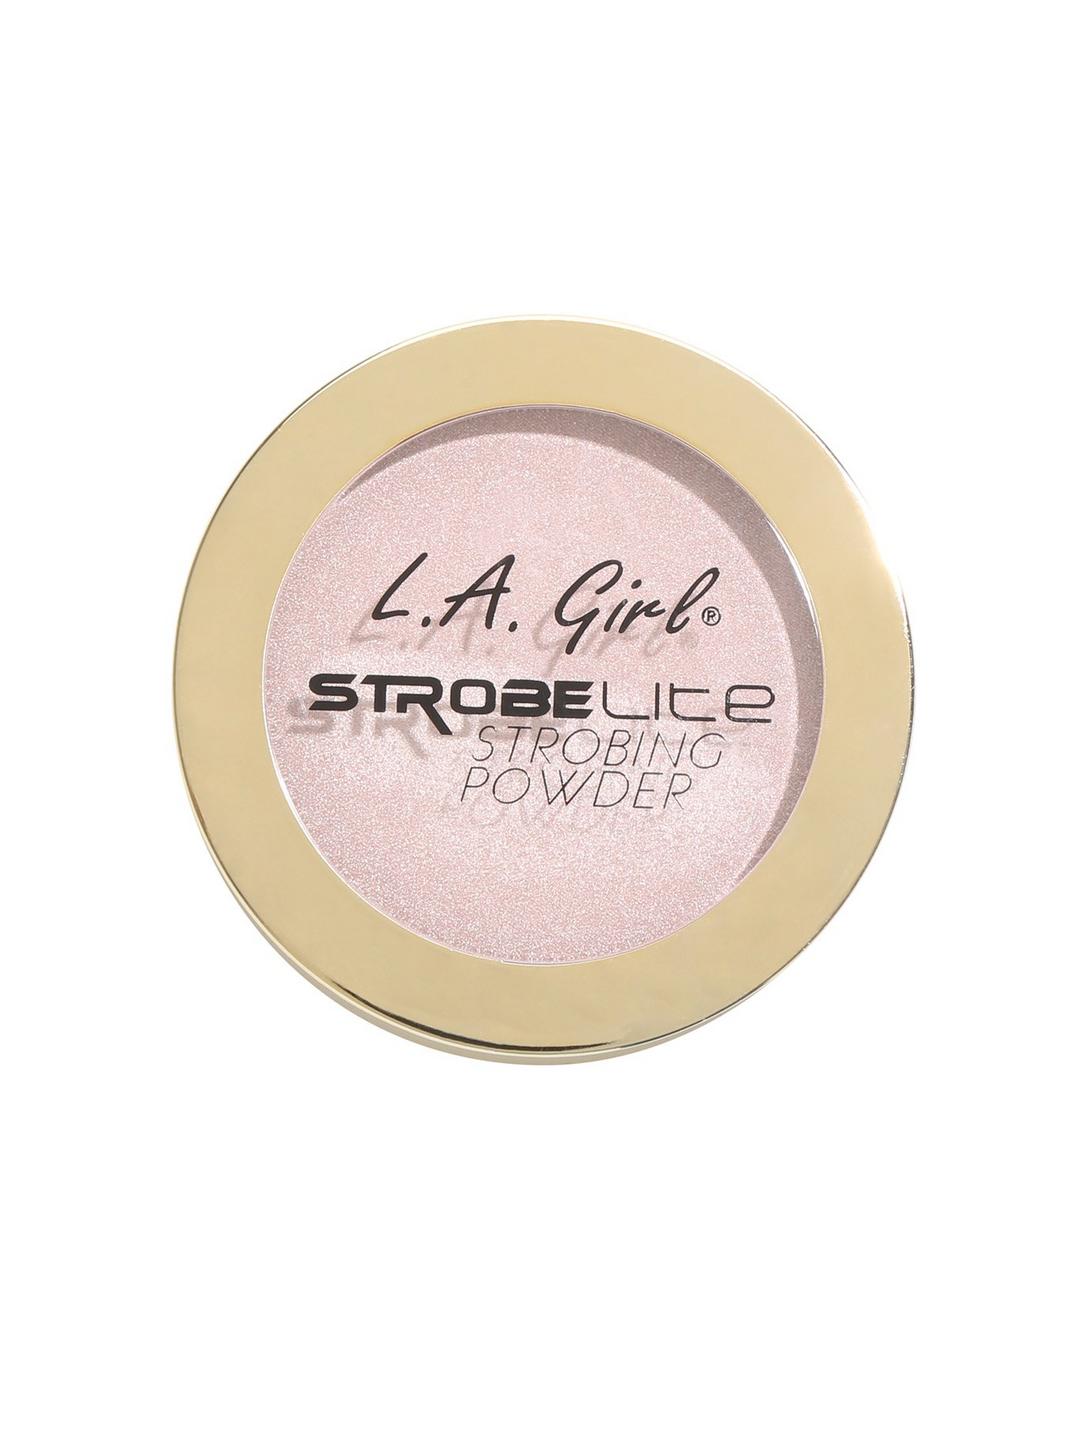 L.A. Girl Strobe Light 90 Watt Strobing Powder, , hi-res